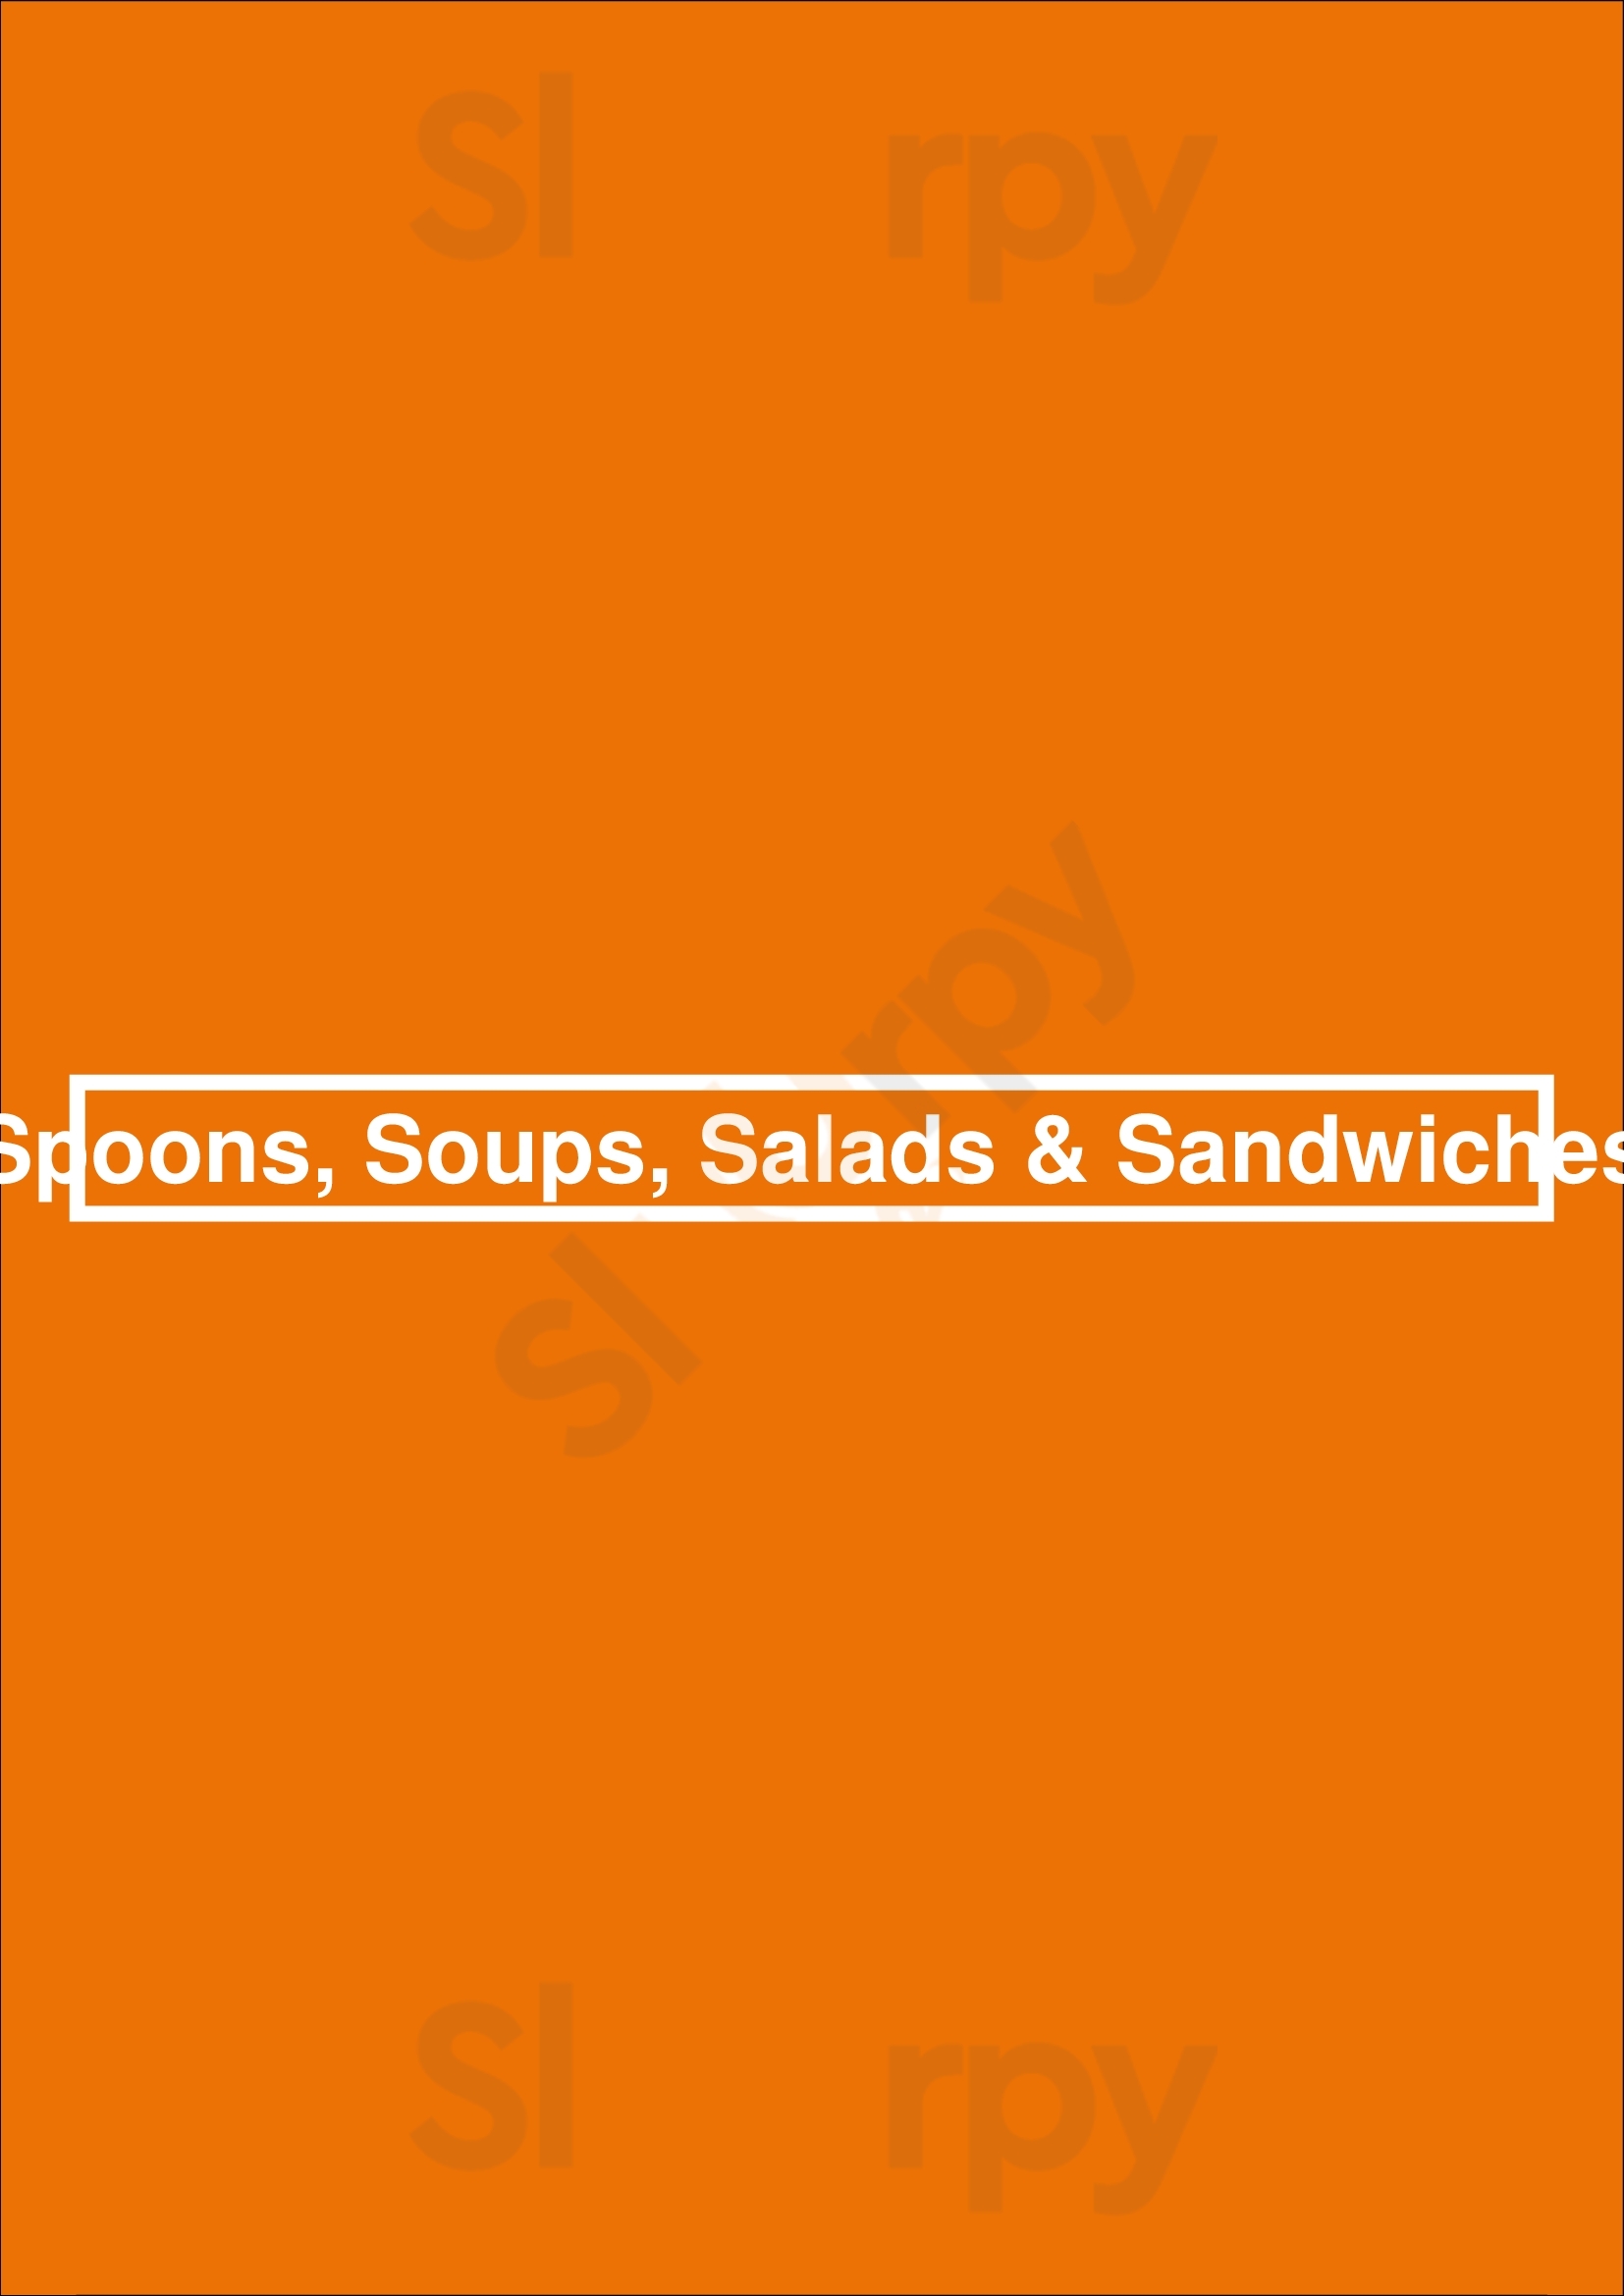 Spoons, Soups, Salads & Sandwiches Fort Collins Menu - 1